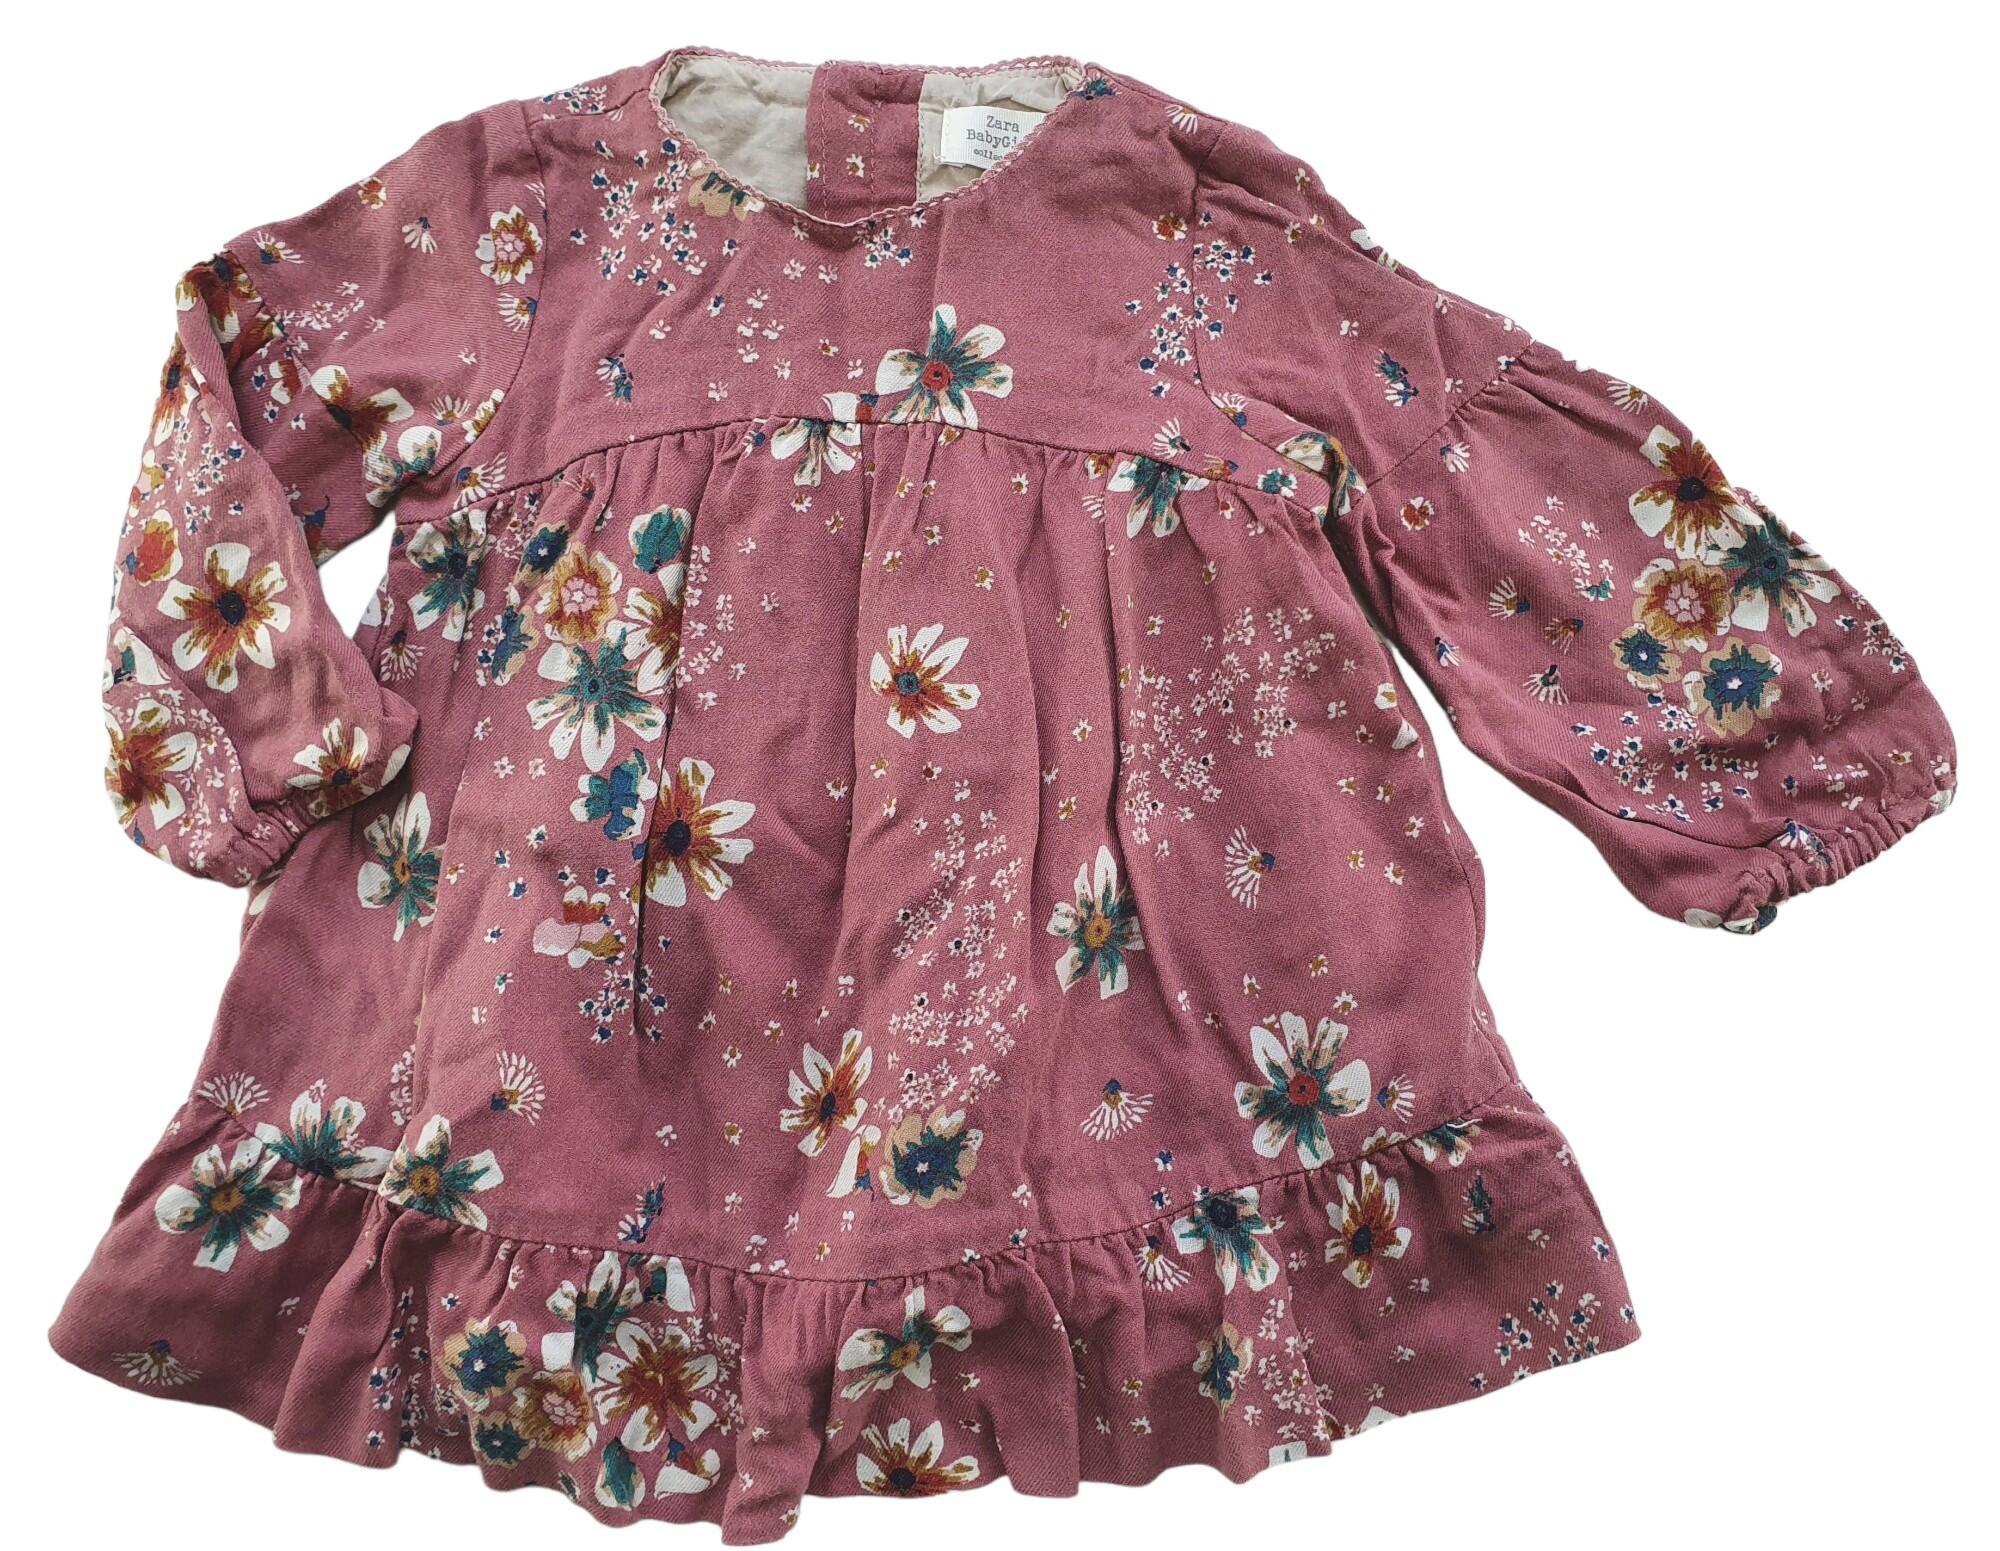 Ernæring Bonus Beskæftiget Brugt Zara babygirl sød blomstret kjole str. 68